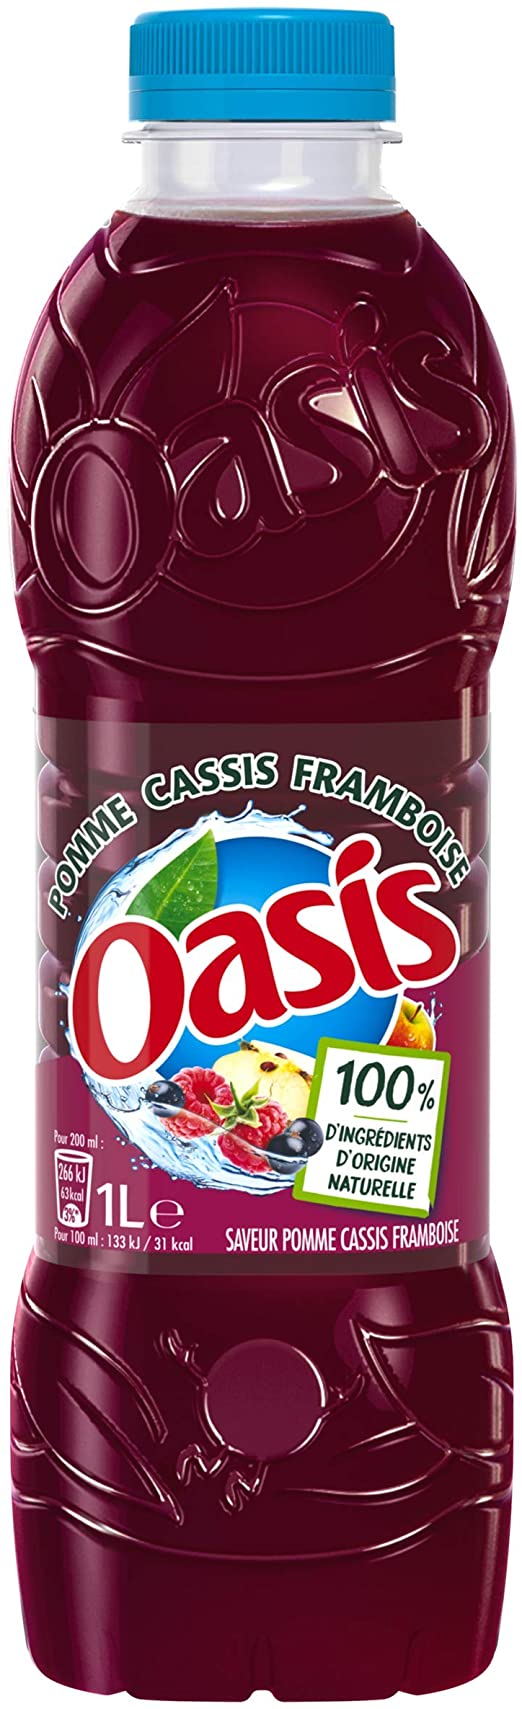 OASIS POMME CASSIS FRAMBOISE